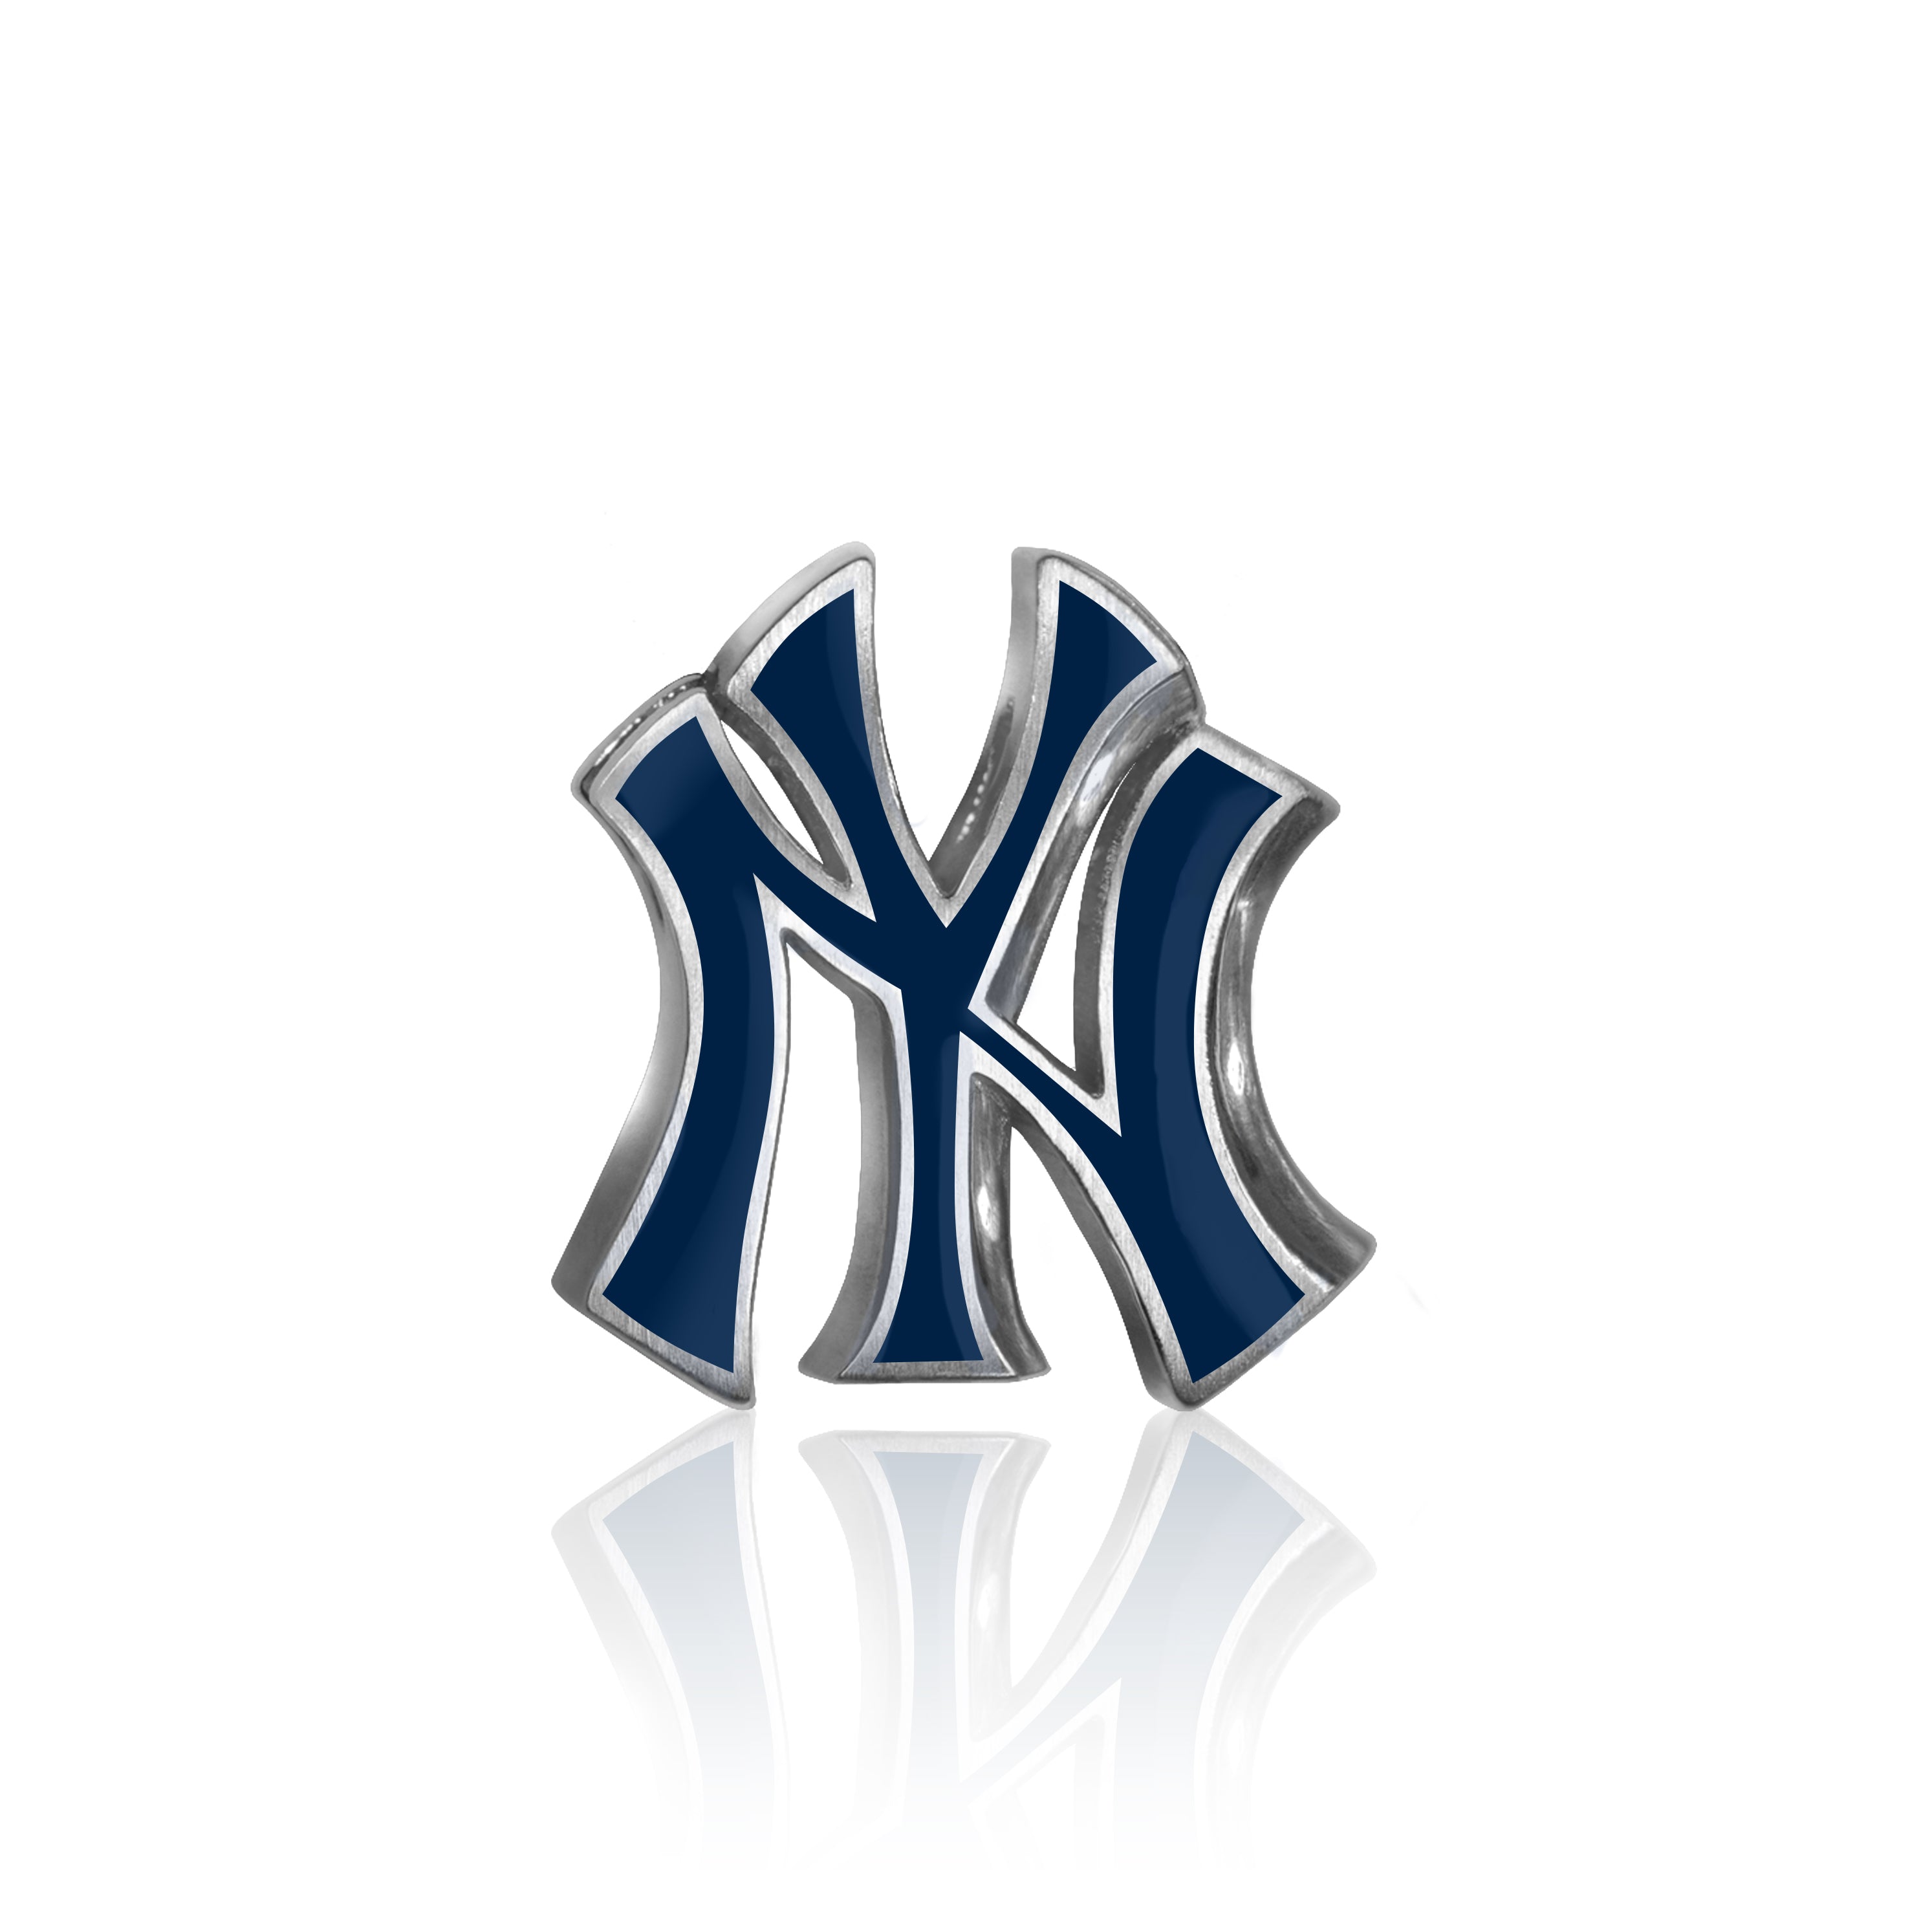 New York Yankees (@Yankees) / X